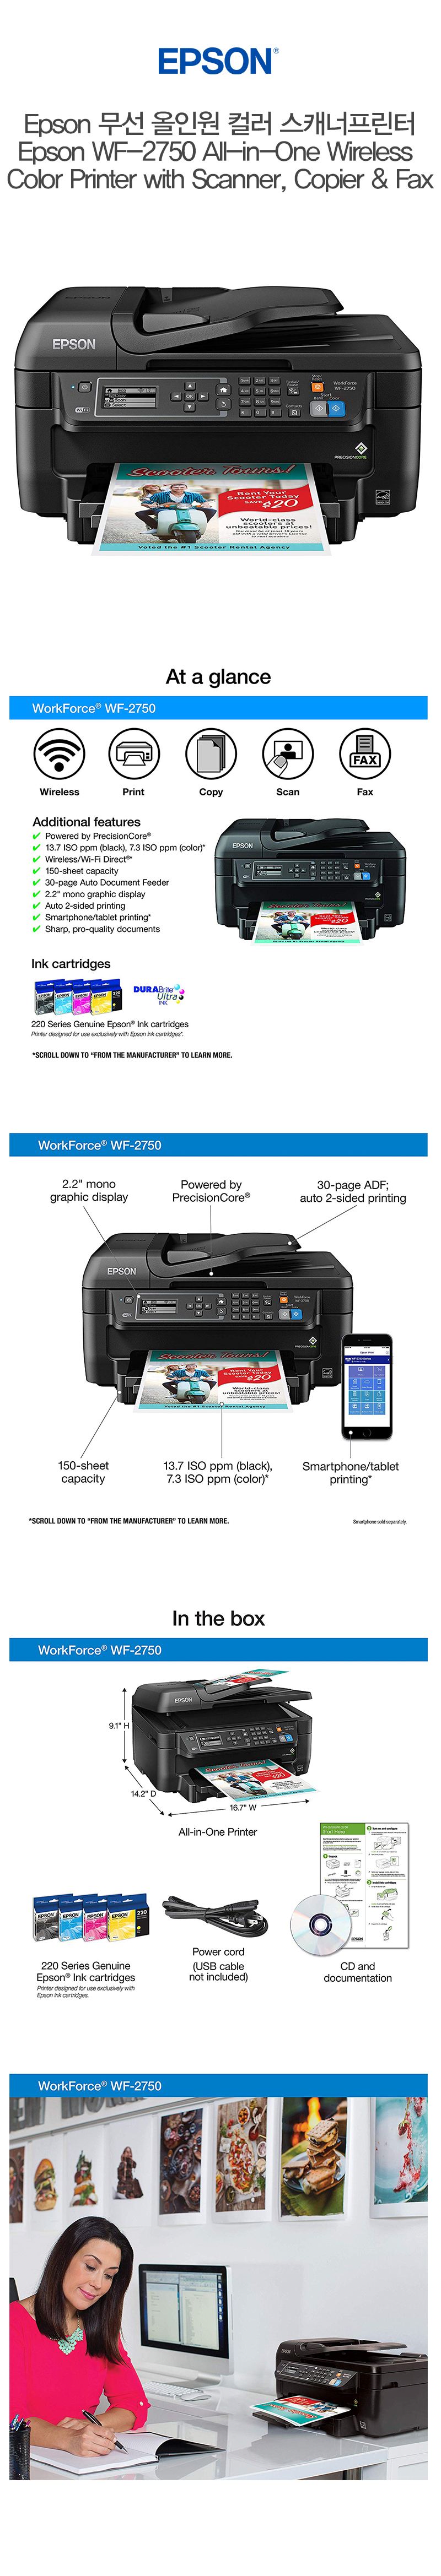  추가금 없음  앱손 무선 올인원 컬러 스캐너 프린터   Epson WF-2750 All-in-One Wireless Color Printer with Scanner